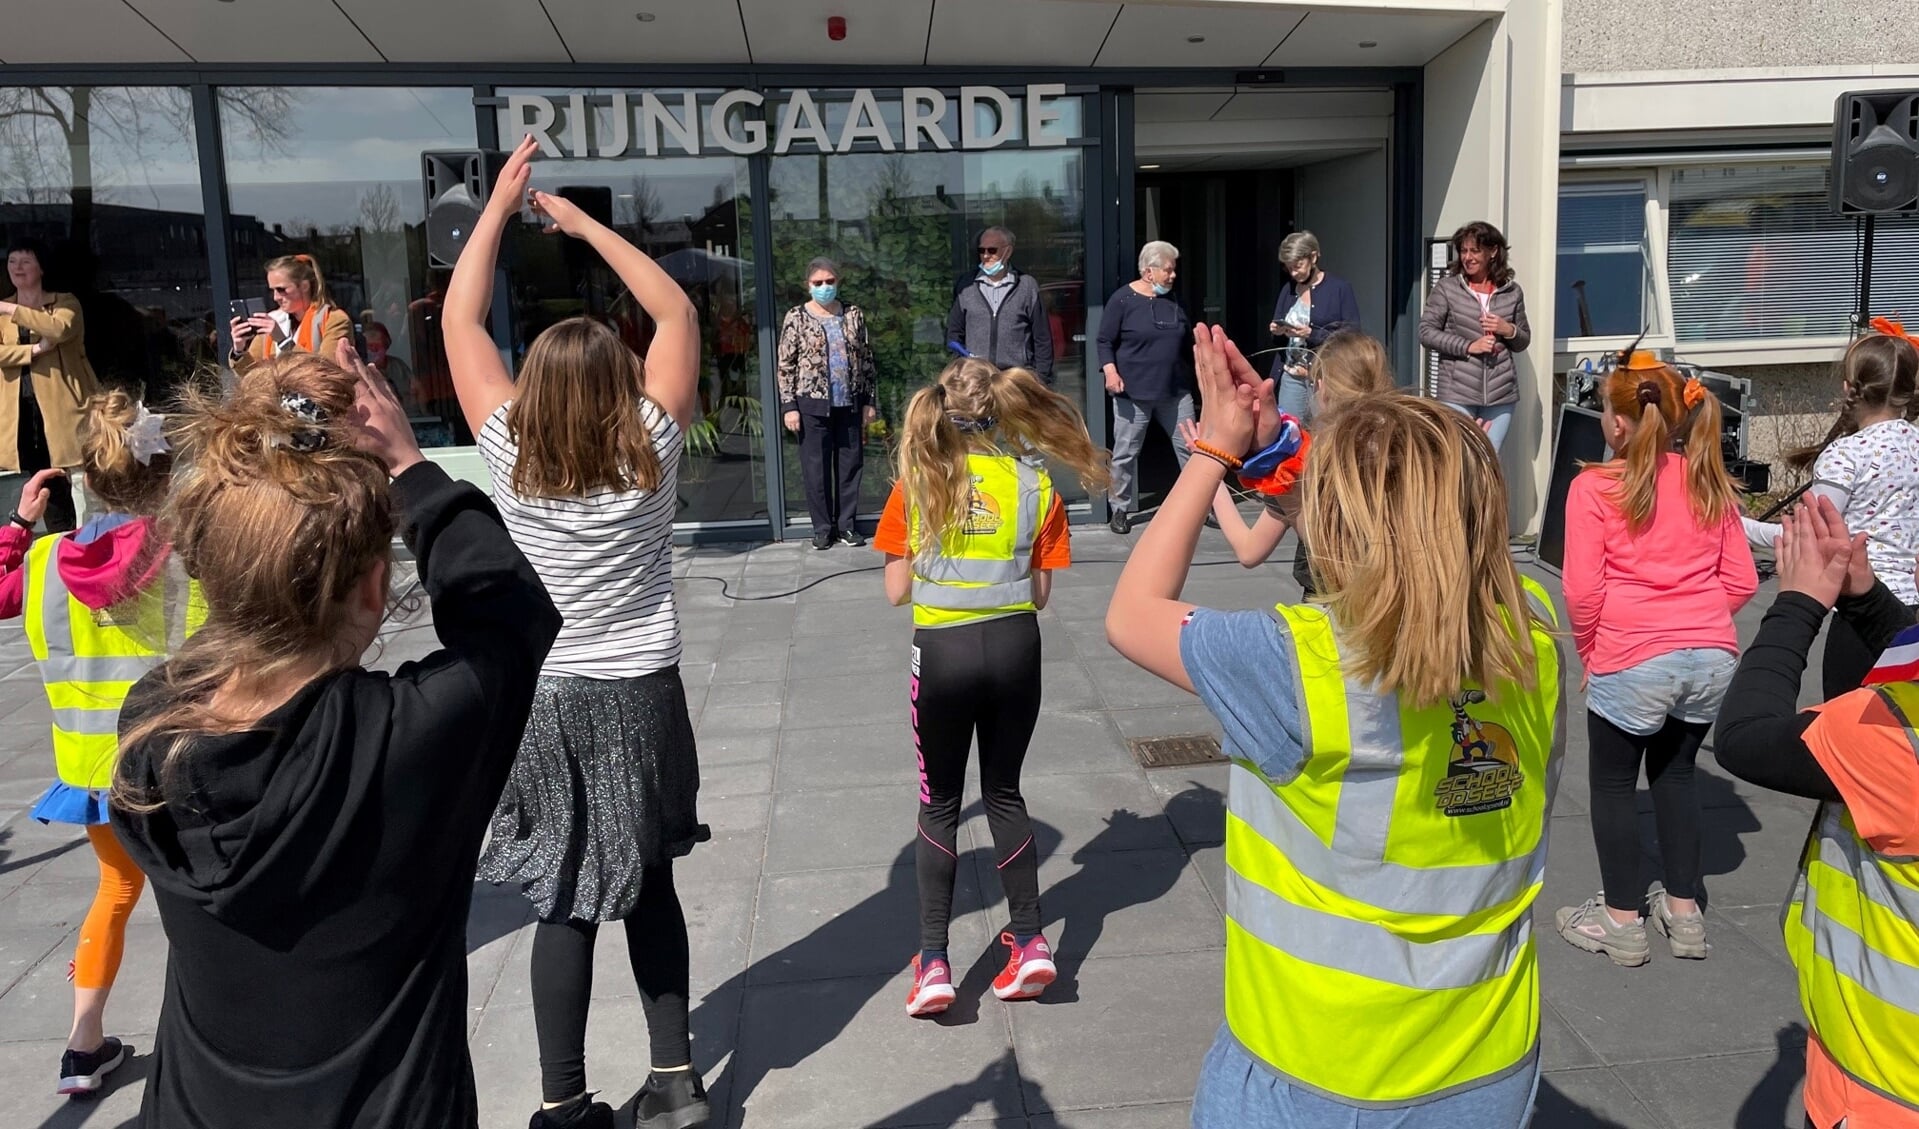 Willibrord-leerlingen dansen op het koningsspelenlied voor de bewoners van Rijngaarde.